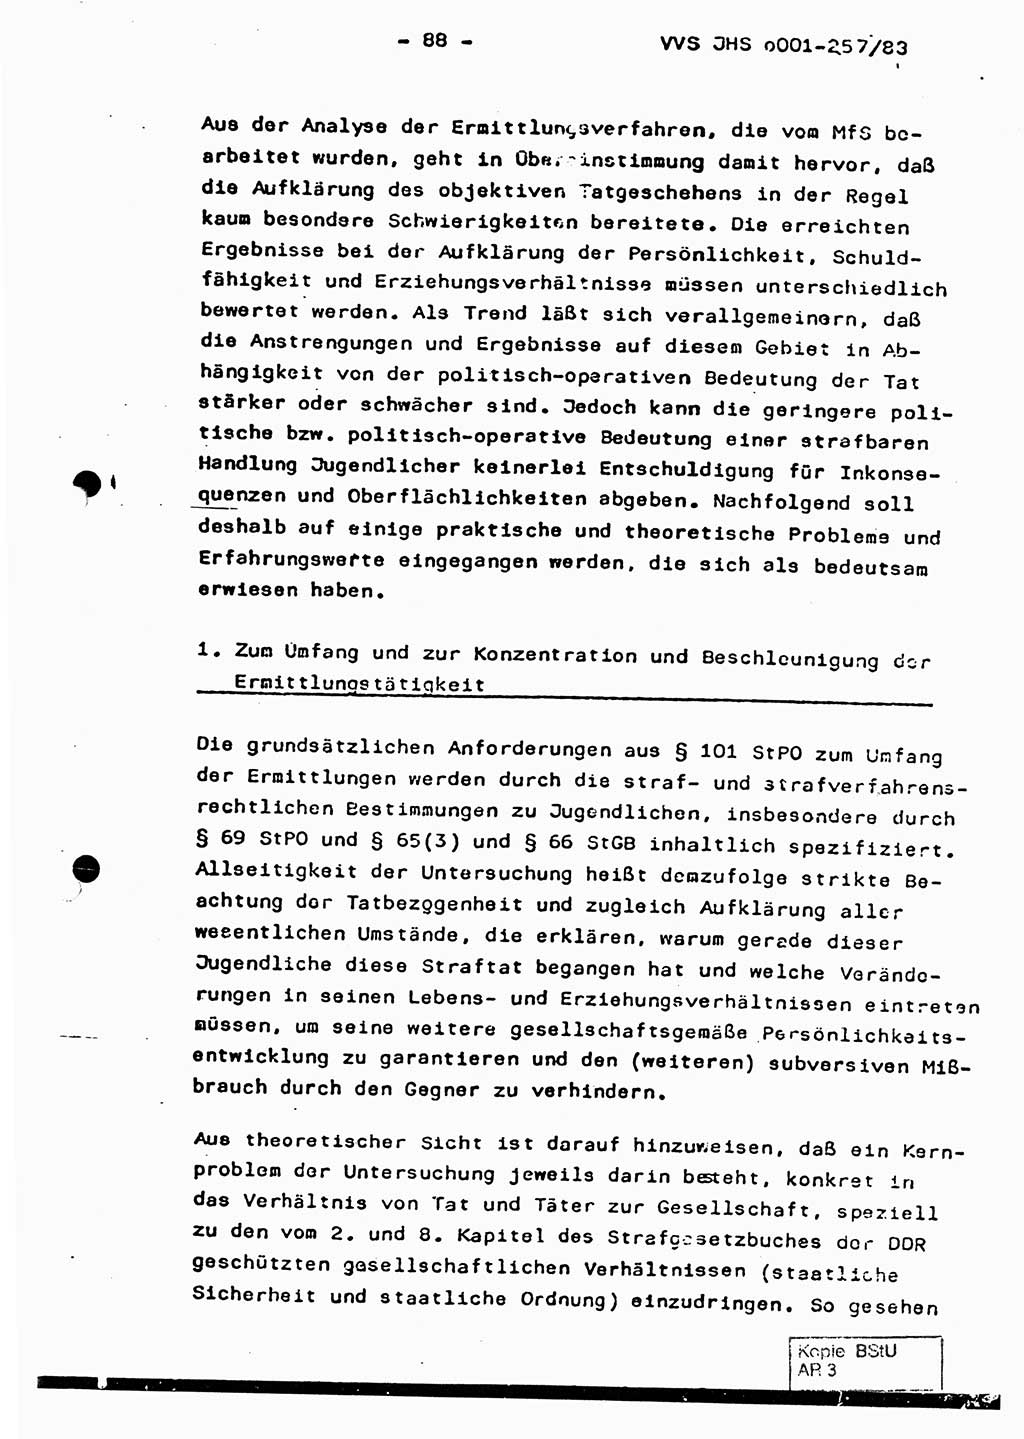 Dissertation, Oberst Helmut Lubas (BV Mdg.), Oberstleutnant Manfred Eschberger (HA IX), Oberleutnant Hans-Jürgen Ludwig (JHS), Ministerium für Staatssicherheit (MfS) [Deutsche Demokratische Republik (DDR)], Juristische Hochschule (JHS), Vertrauliche Verschlußsache (VVS) o001-257/83, Potsdam 1983, Seite 88 (Diss. MfS DDR JHS VVS o001-257/83 1983, S. 88)